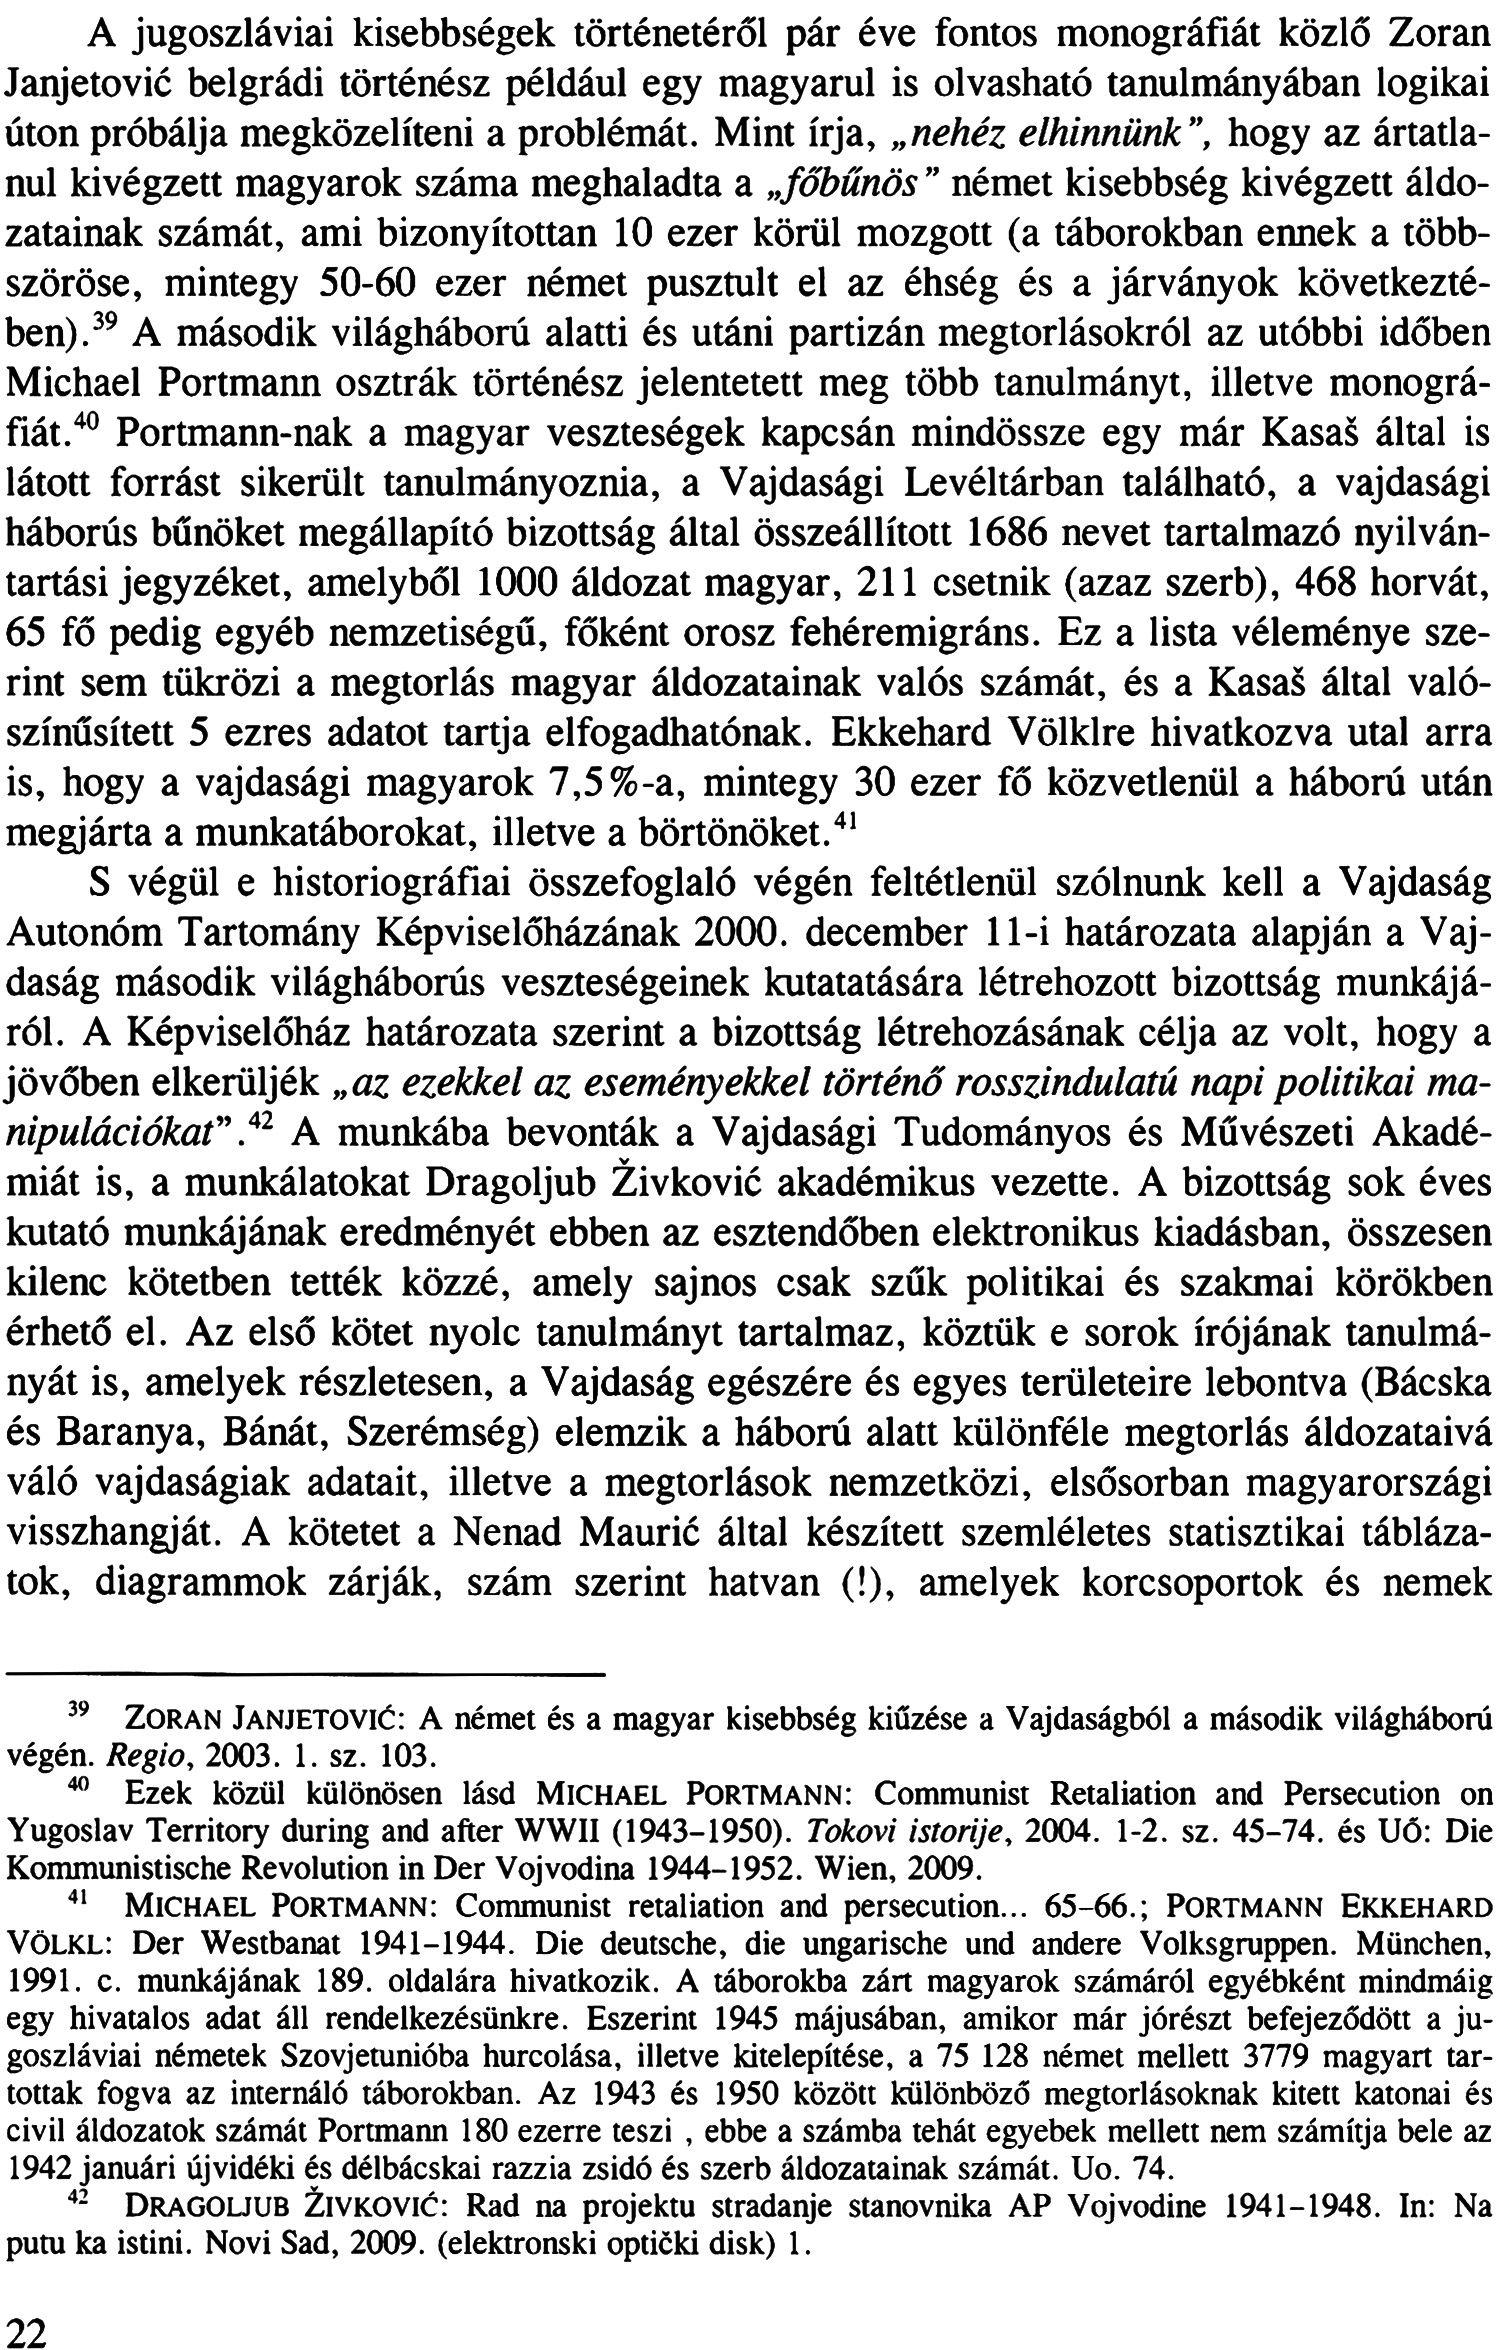 A jugoszláviai kisebbségek történetéről pár éve fontos monográfiát közlő Zoran Janjetović belgrádi történész például egy magyarul is olvasható tanulmányában logikai úton próbálja megközelíteni a